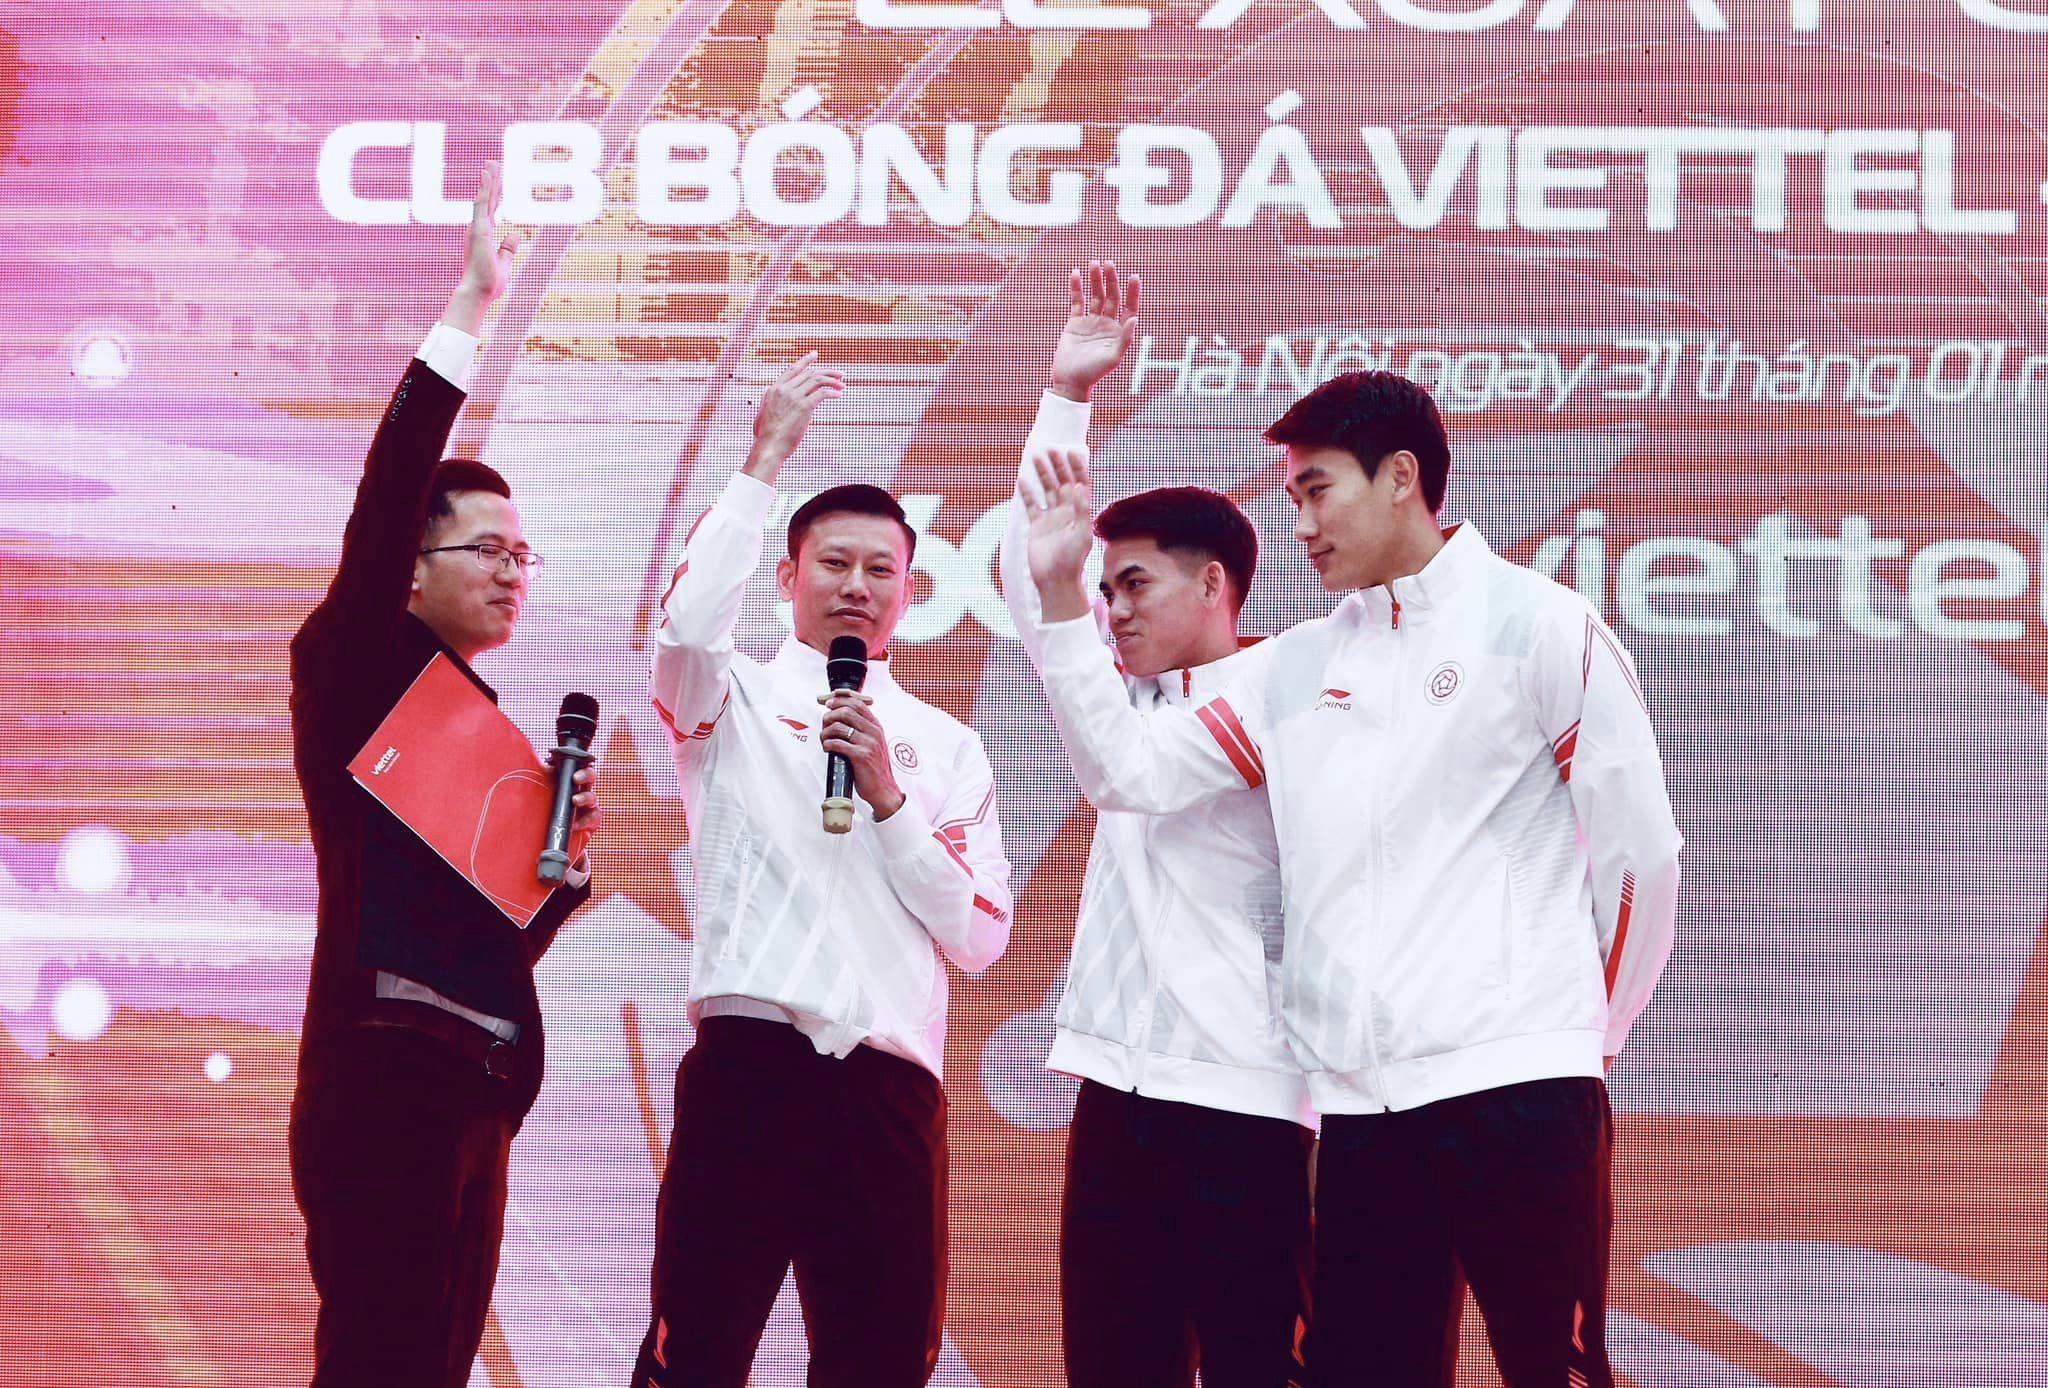 HLV trưởng Thạch Bảo Khanh cùng các cầu thủ Nhâm Mạnh Dũng, Khuất Văn Khang cùng quyết tâm cho mùa giải mới. (Ảnh: Internet)